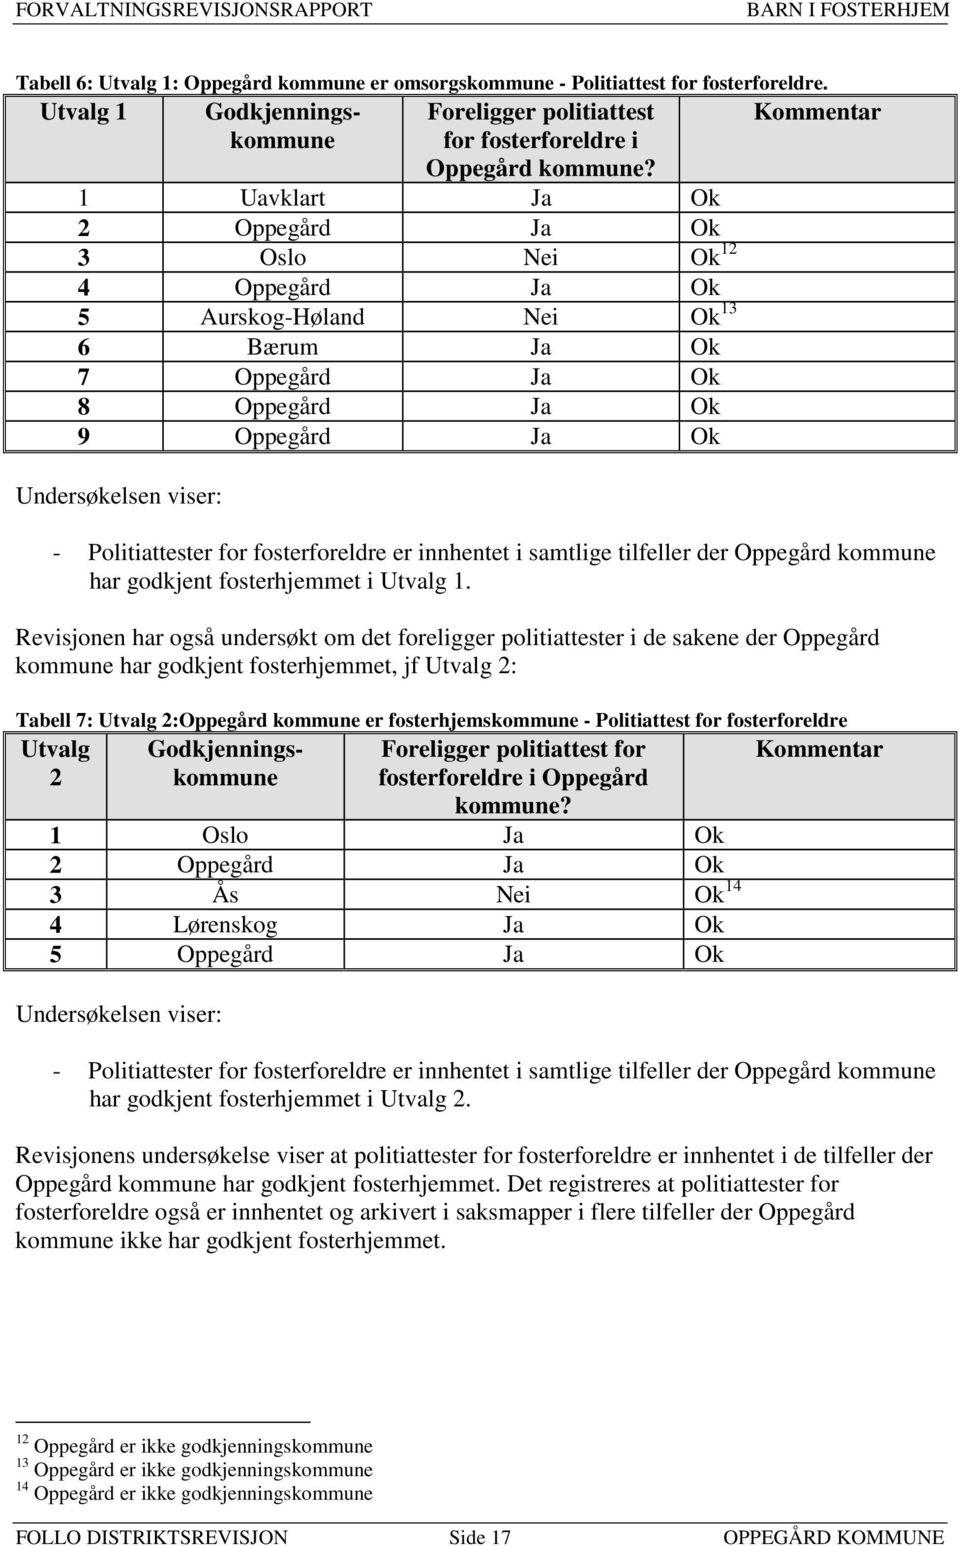 Politiattester for fosterforeldre er innhentet i samtlige tilfeller der Oppegård kommune har godkjent fosterhjemmet i Utvalg 1.